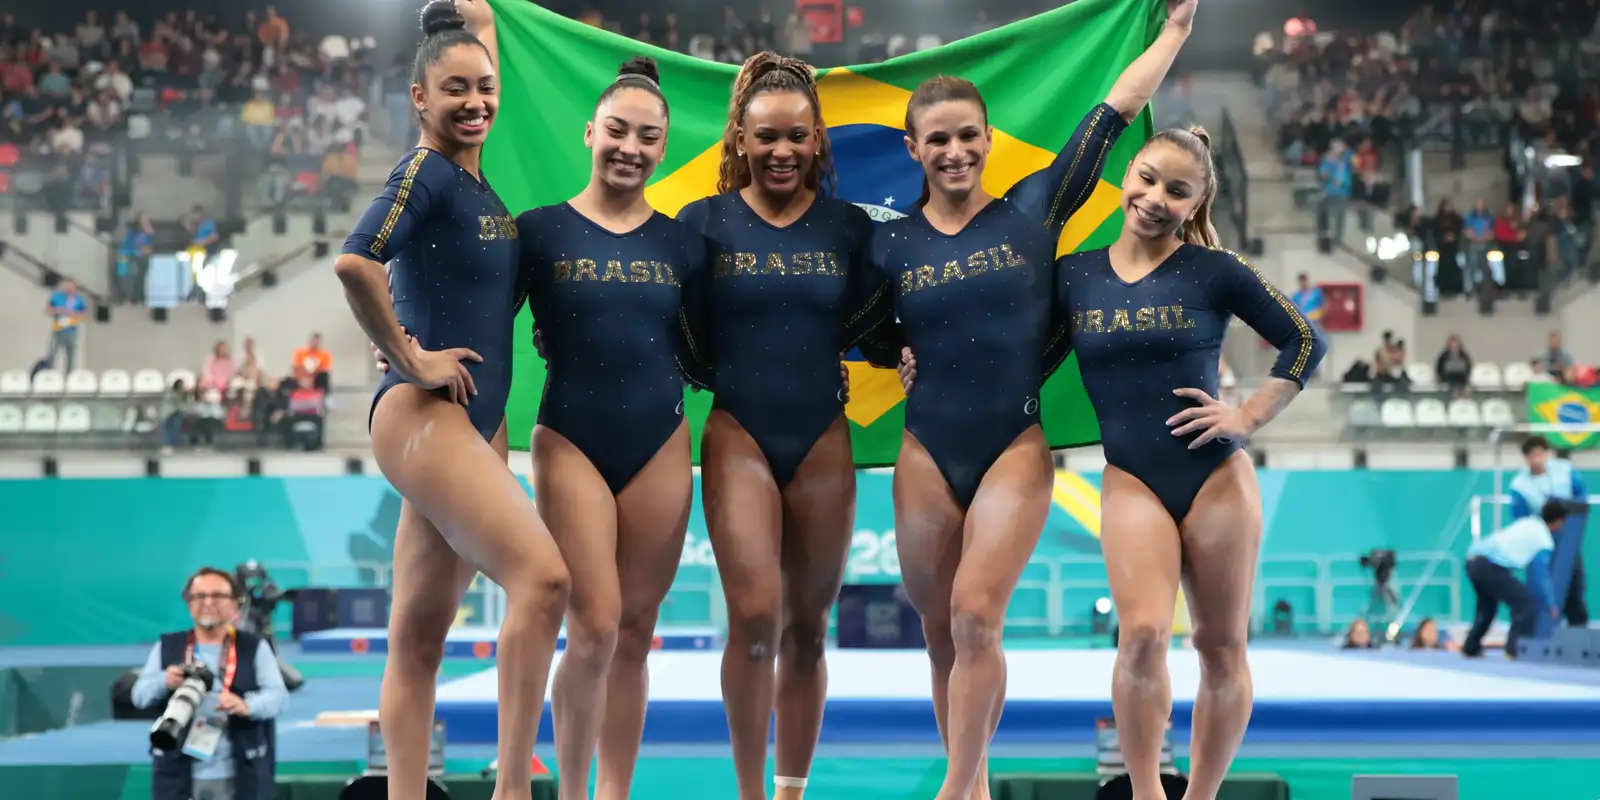 OLIMPÍADAS: Brasil garante medalha de bronze com ginástica artística feminina por equipe 